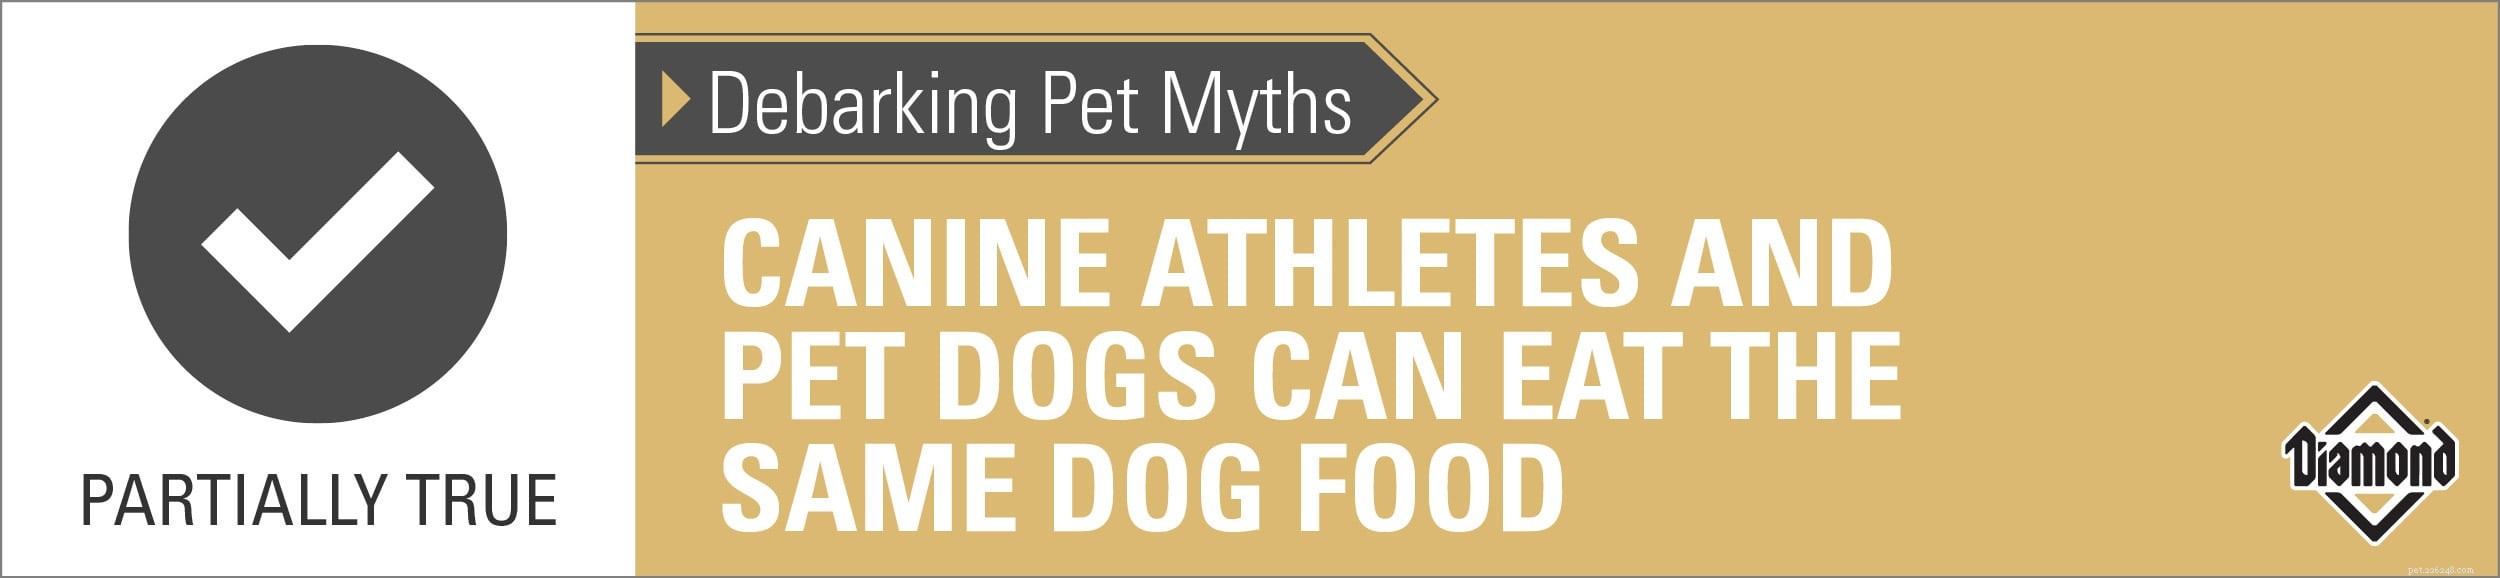 Avbarkning av husdjursmyter:Hundidrottare och husdjurshundar kan äta samma hundmat